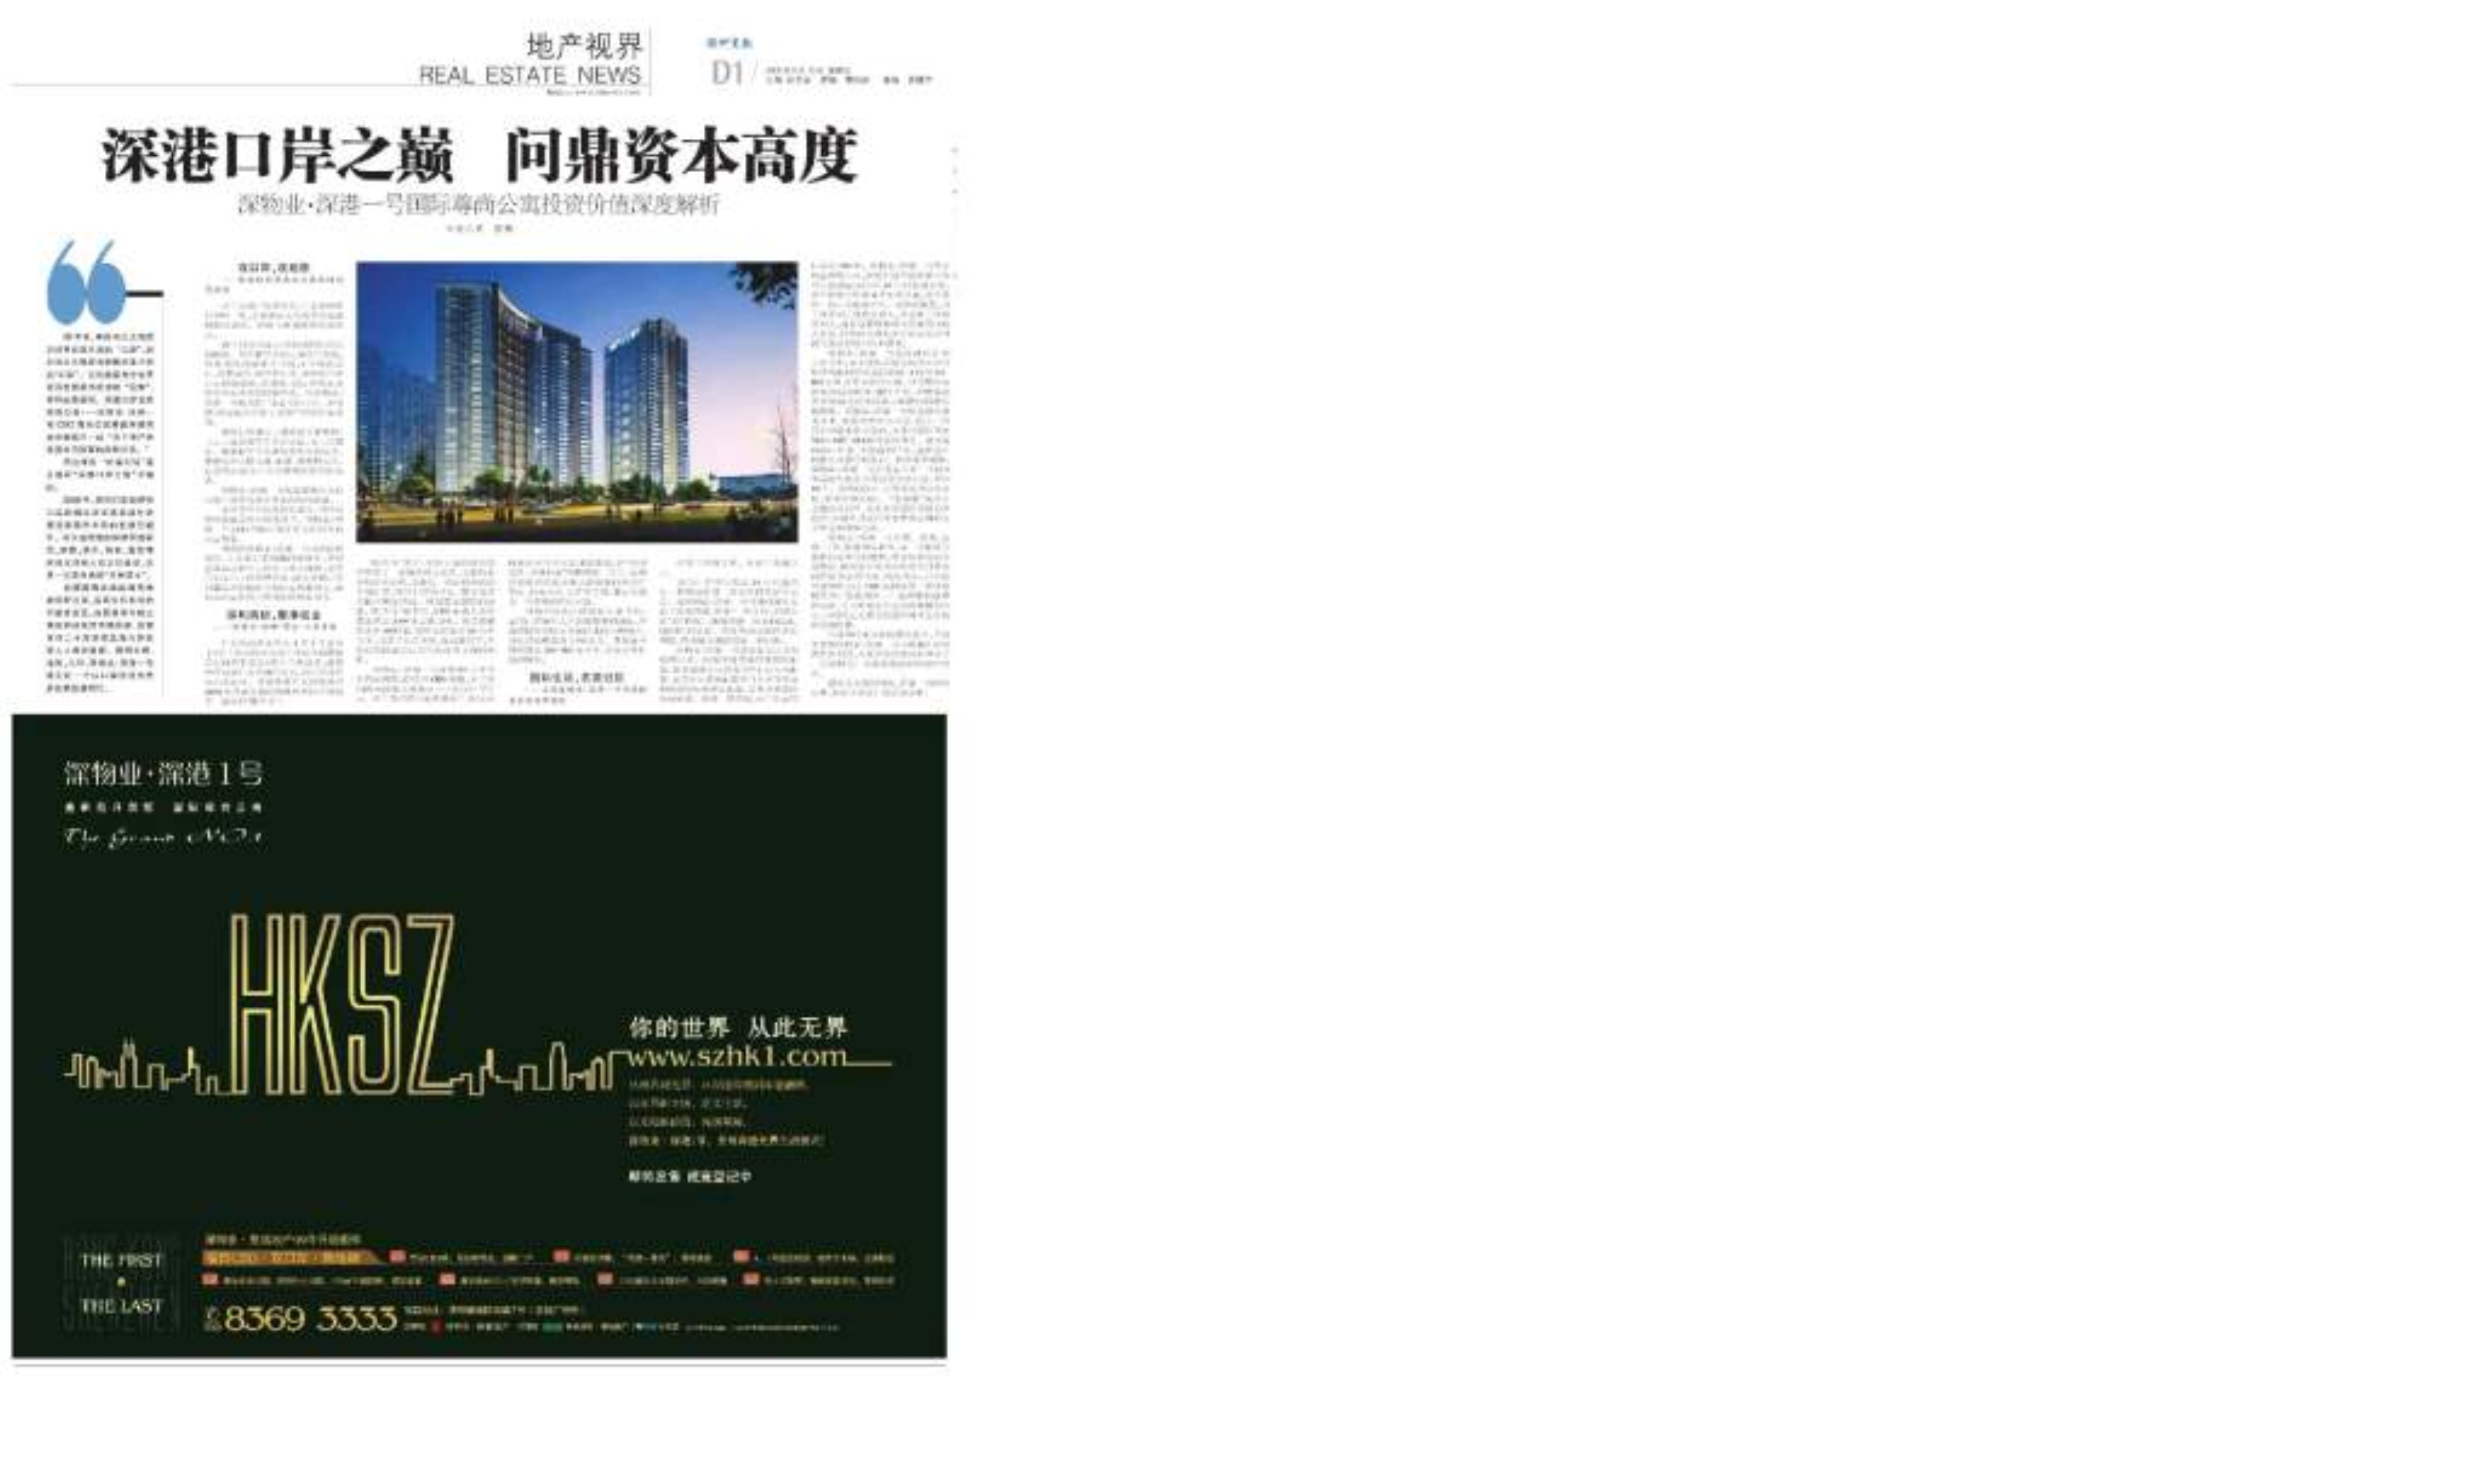 深圳市房地产项目报纸宣传广告经典案汇编(下册)